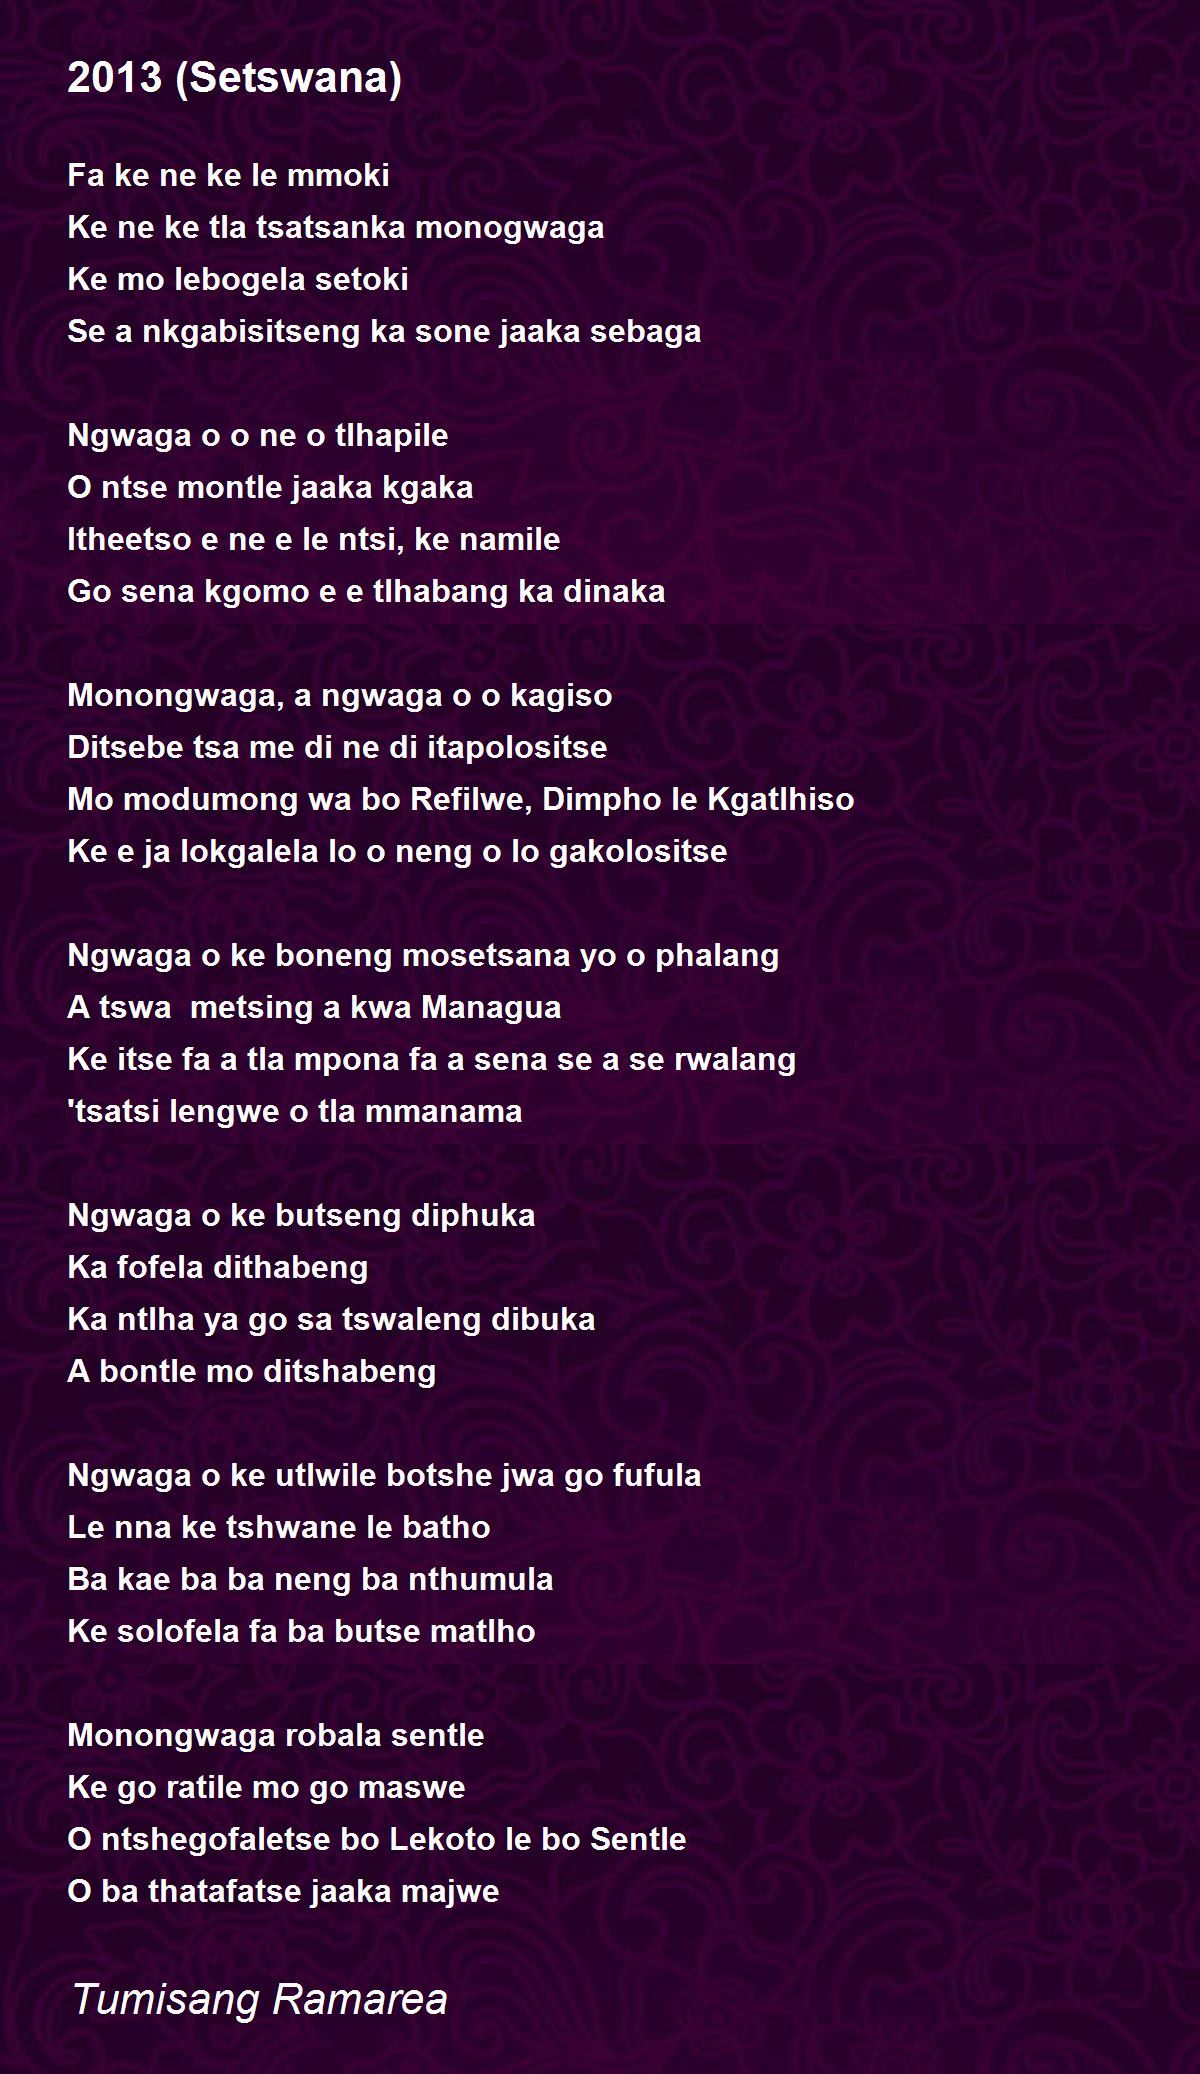 2013 (Setswana) Poem by Tumisang Ramarea - Poem Hunter